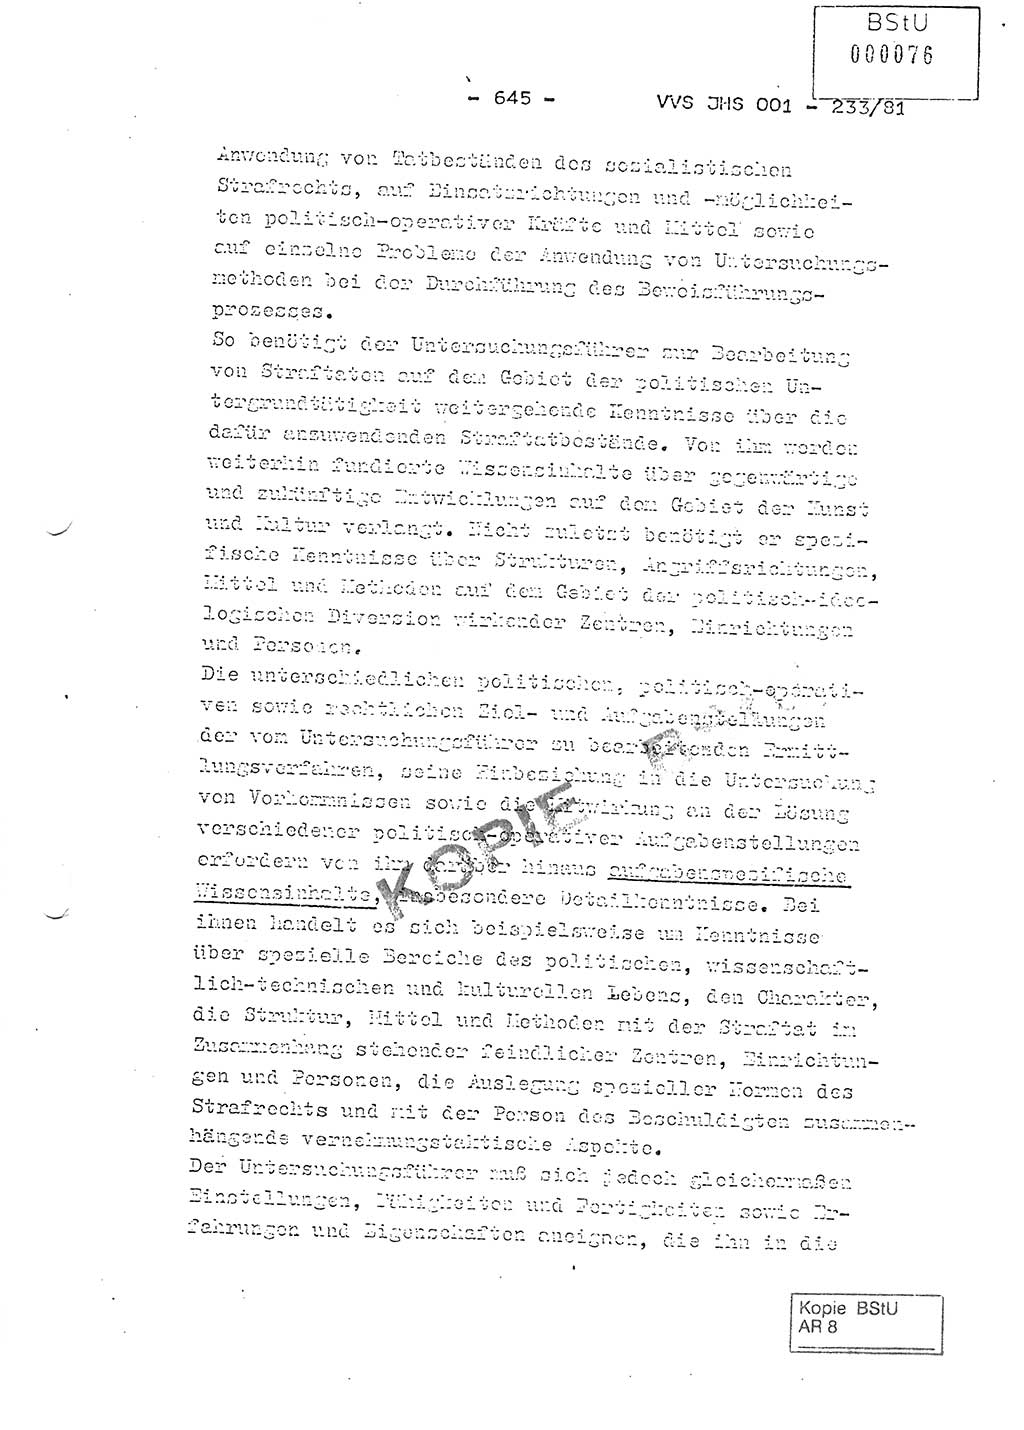 Dissertation Oberstleutnant Horst Zank (JHS), Oberstleutnant Dr. Karl-Heinz Knoblauch (JHS), Oberstleutnant Gustav-Adolf Kowalewski (HA Ⅸ), Oberstleutnant Wolfgang Plötner (HA Ⅸ), Ministerium für Staatssicherheit (MfS) [Deutsche Demokratische Republik (DDR)], Juristische Hochschule (JHS), Vertrauliche Verschlußsache (VVS) o001-233/81, Potsdam 1981, Blatt 645 (Diss. MfS DDR JHS VVS o001-233/81 1981, Bl. 645)